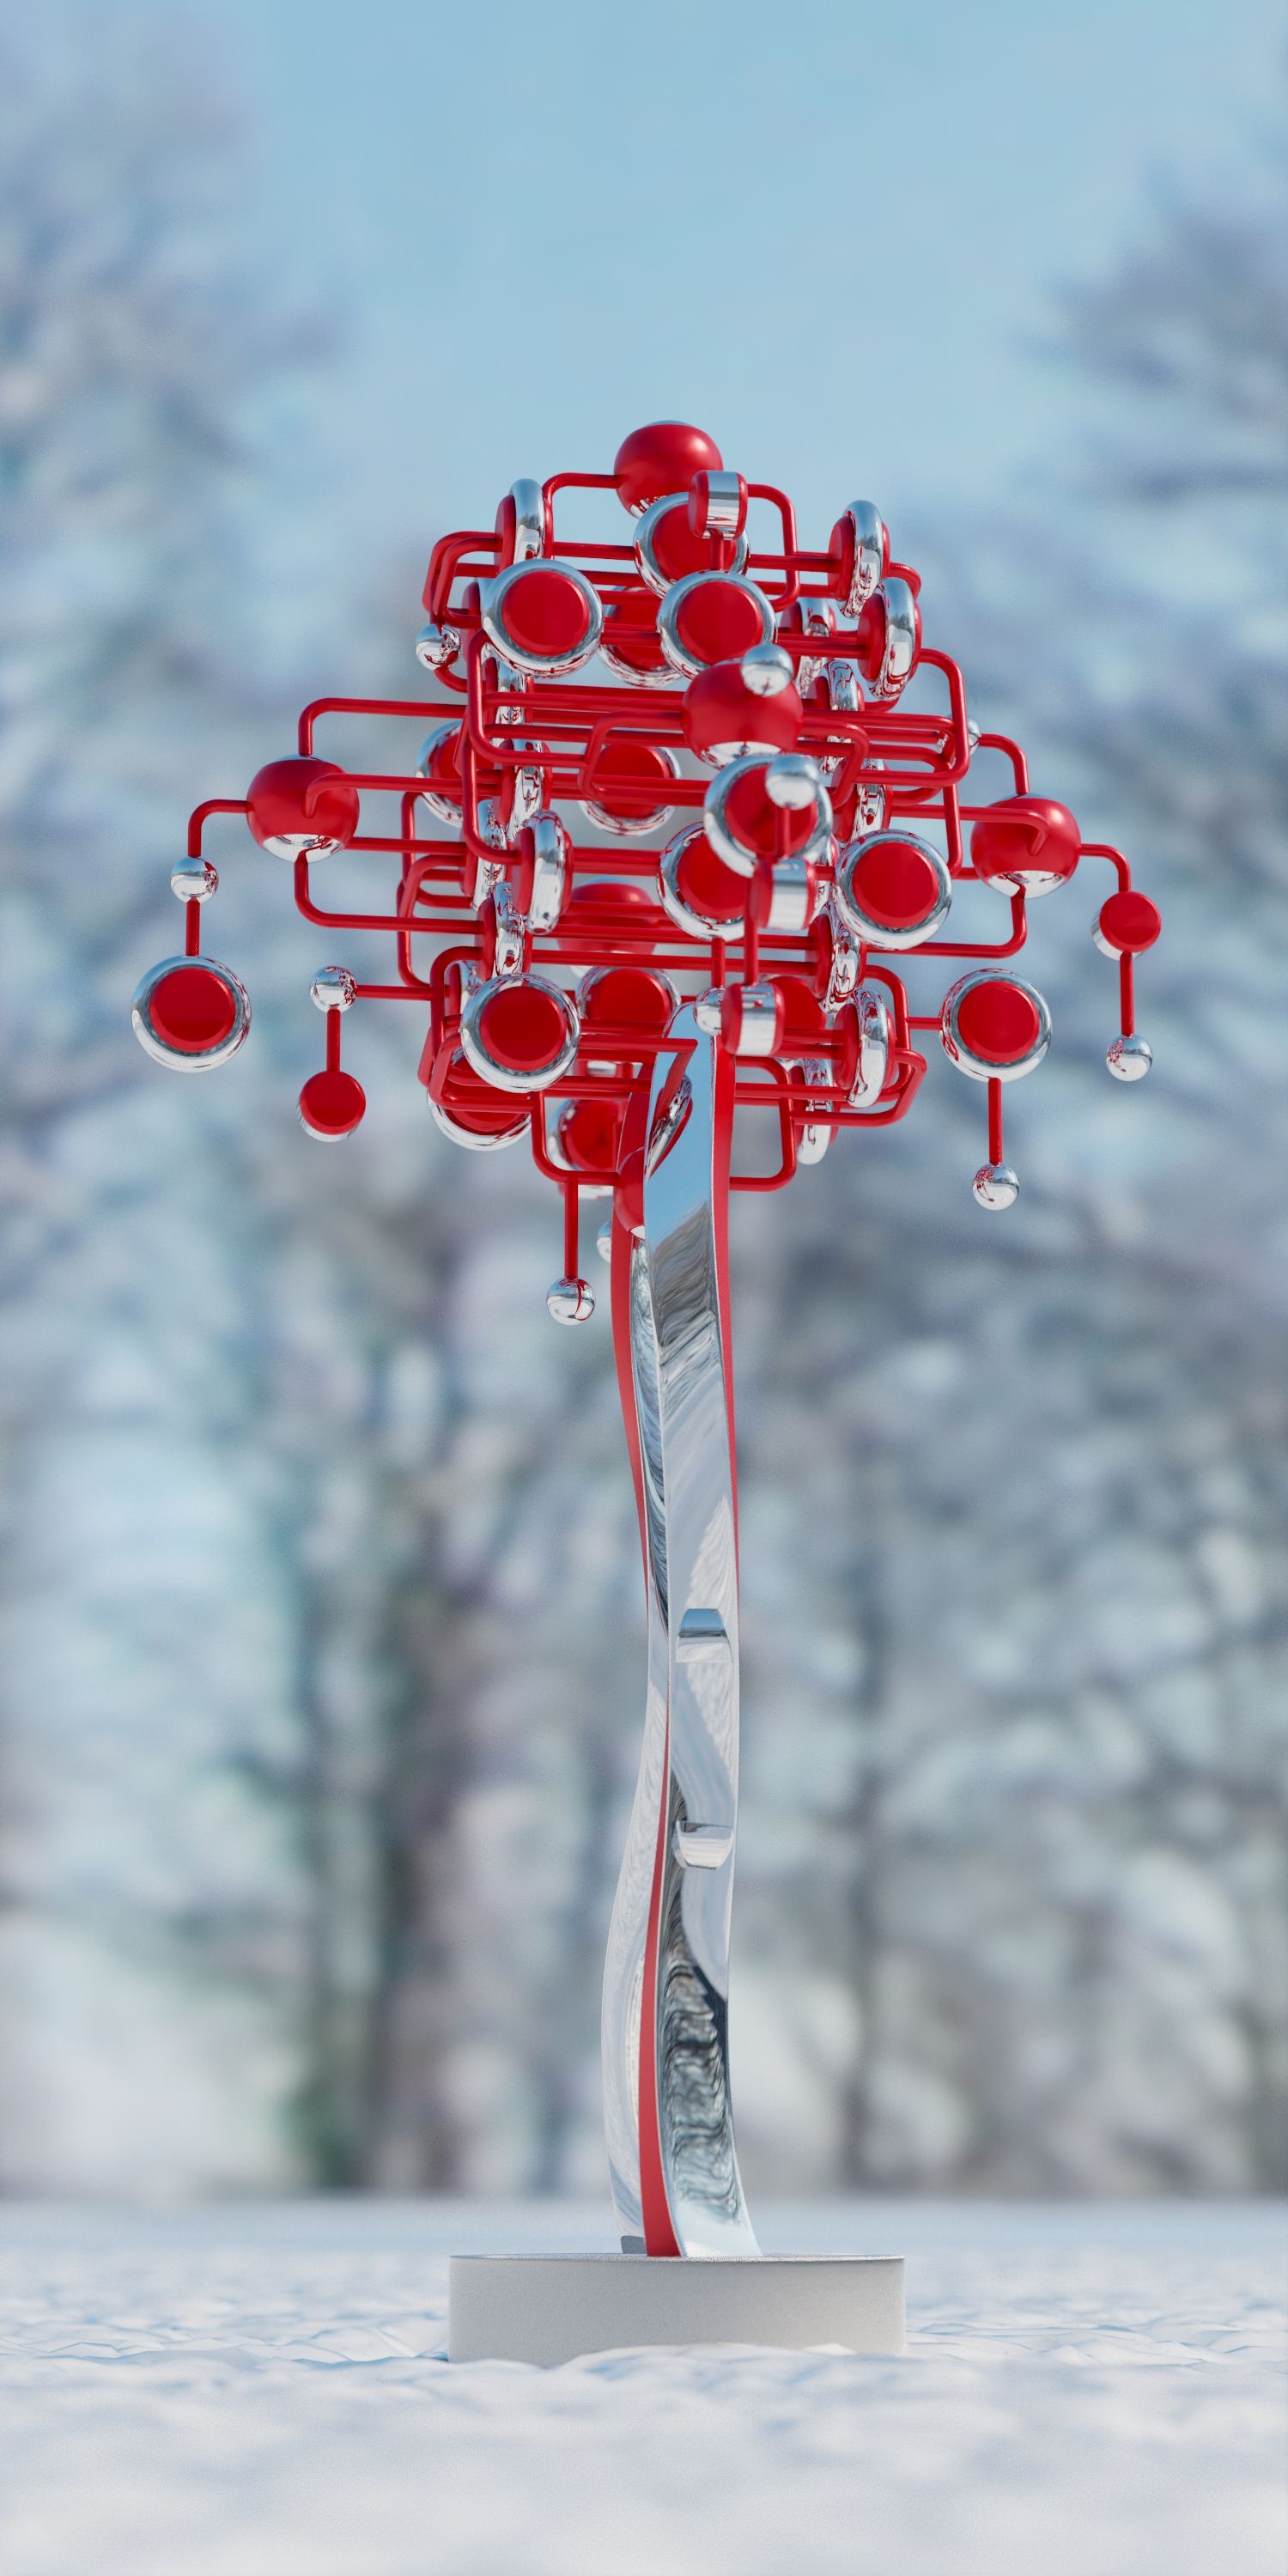 12作品-涂啦啦《张灯结彩》雕塑设计1.5米高-北京冬奥会-涂啦啦3